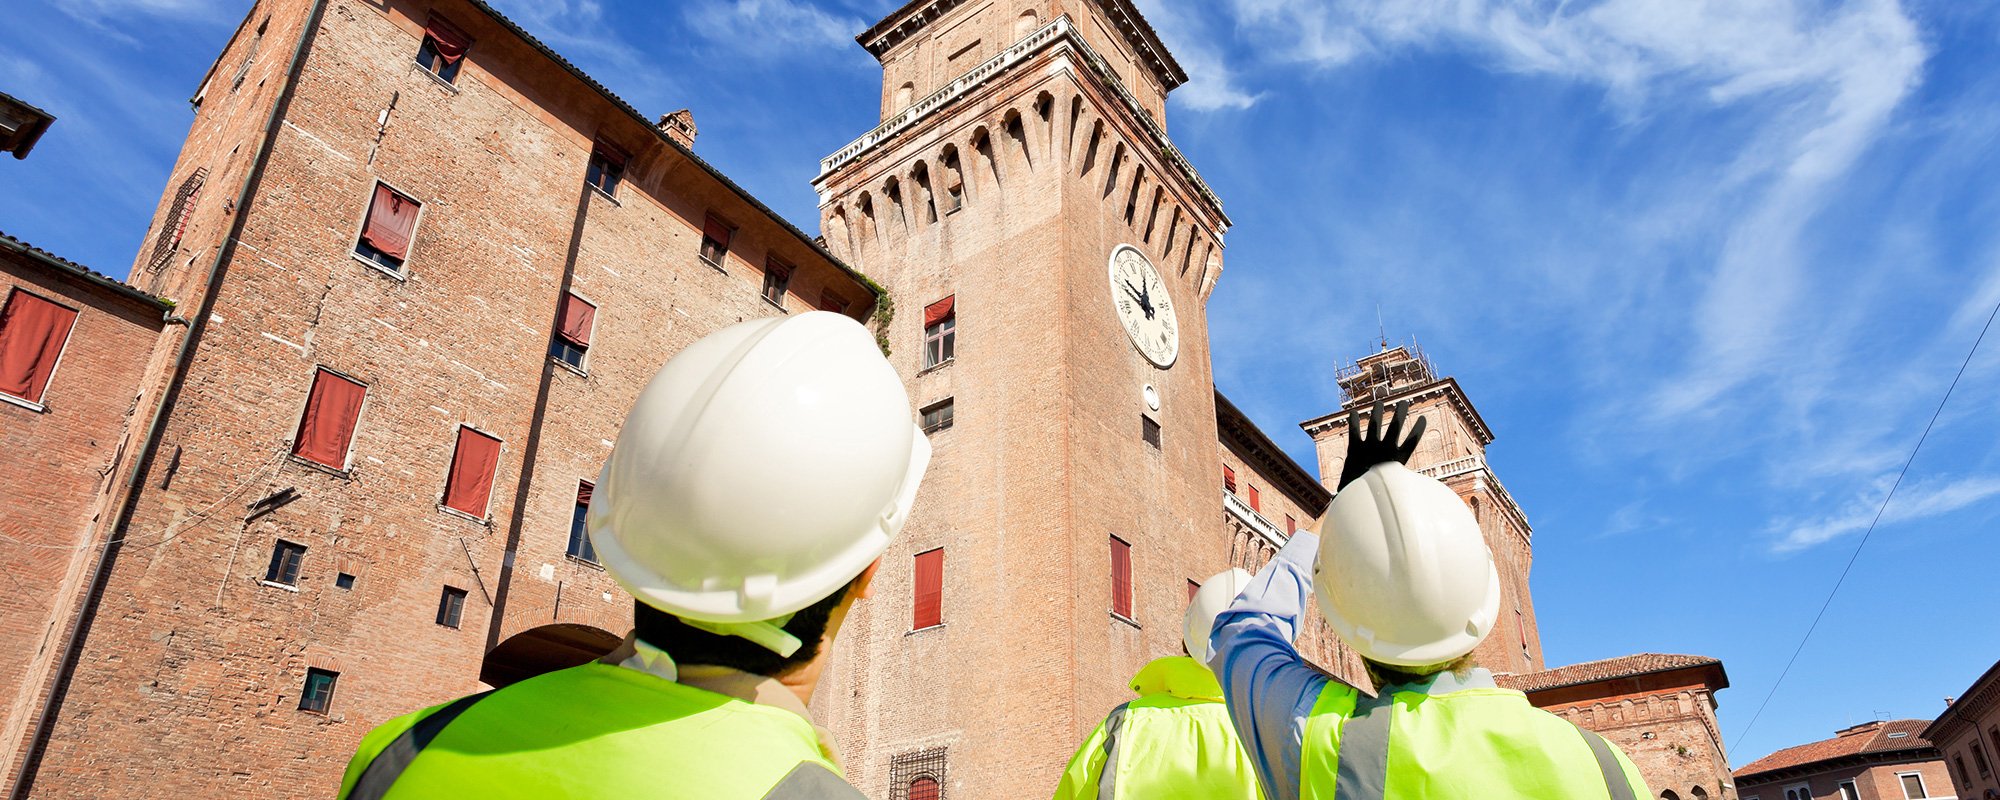 Operai edili al lavoro sul castello estense di Ferrara